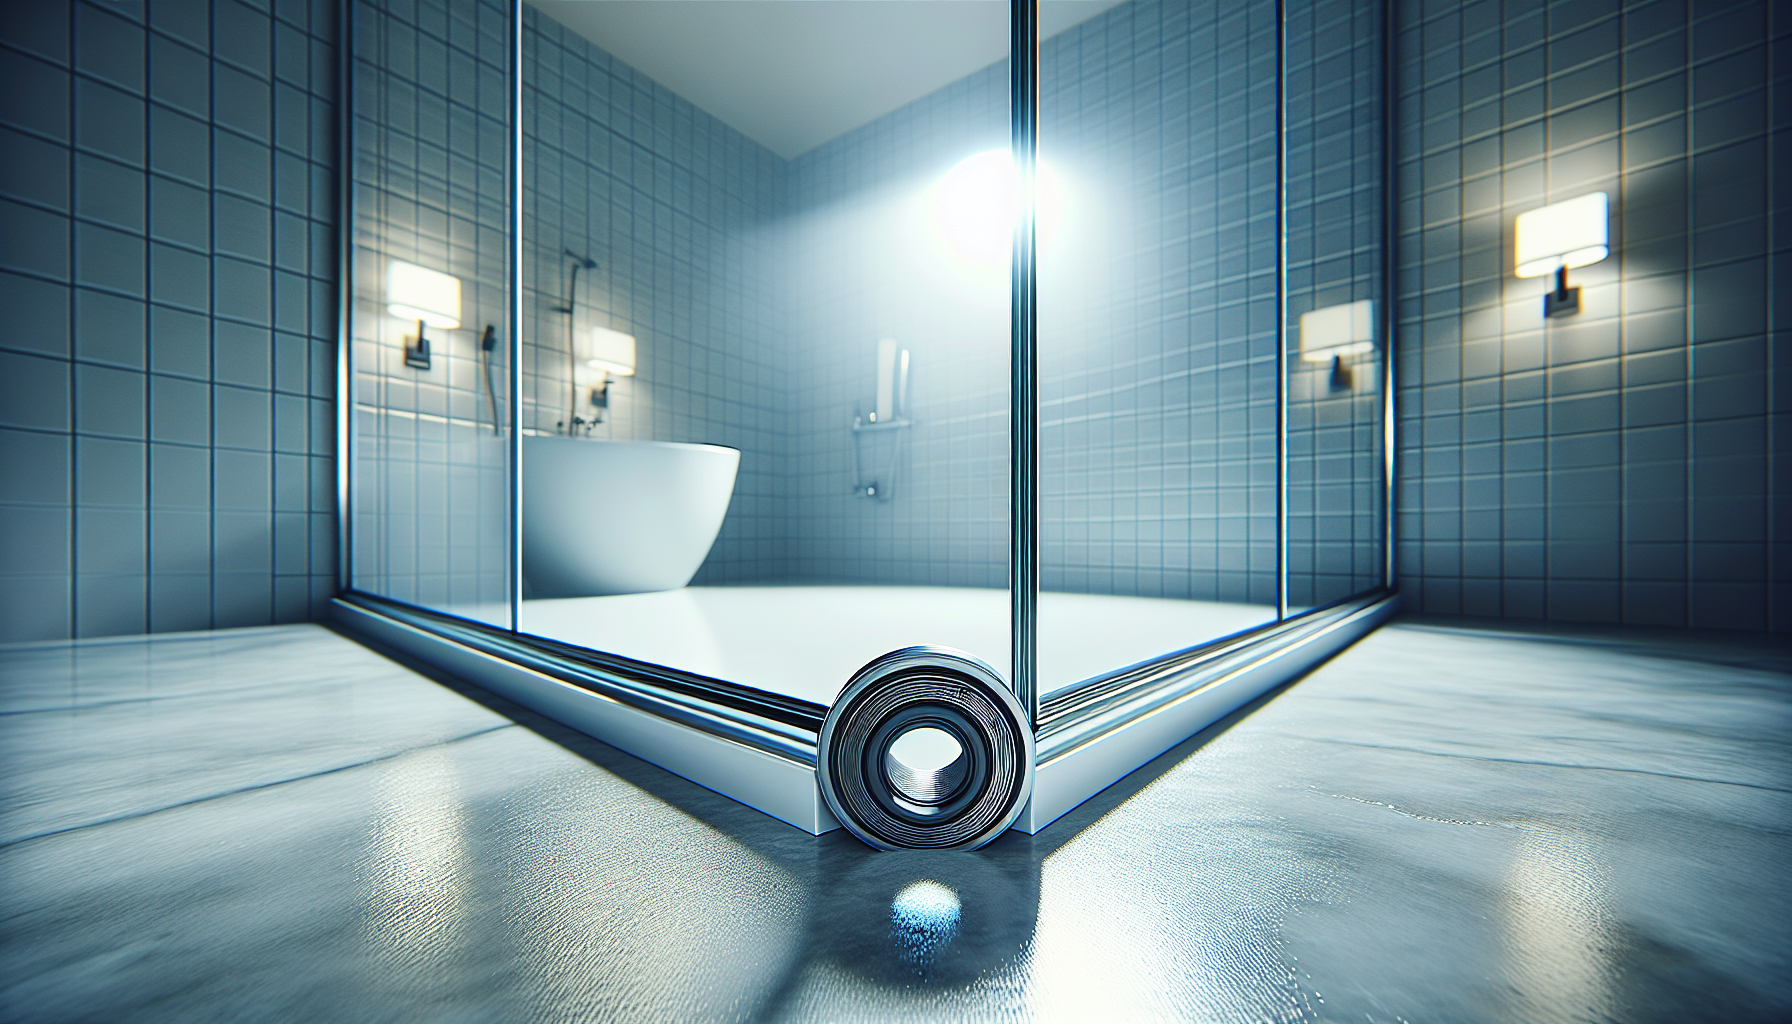 Hygienische Badezimmerumgebung durch regelmäßige Erneuerung der Duschdichtung